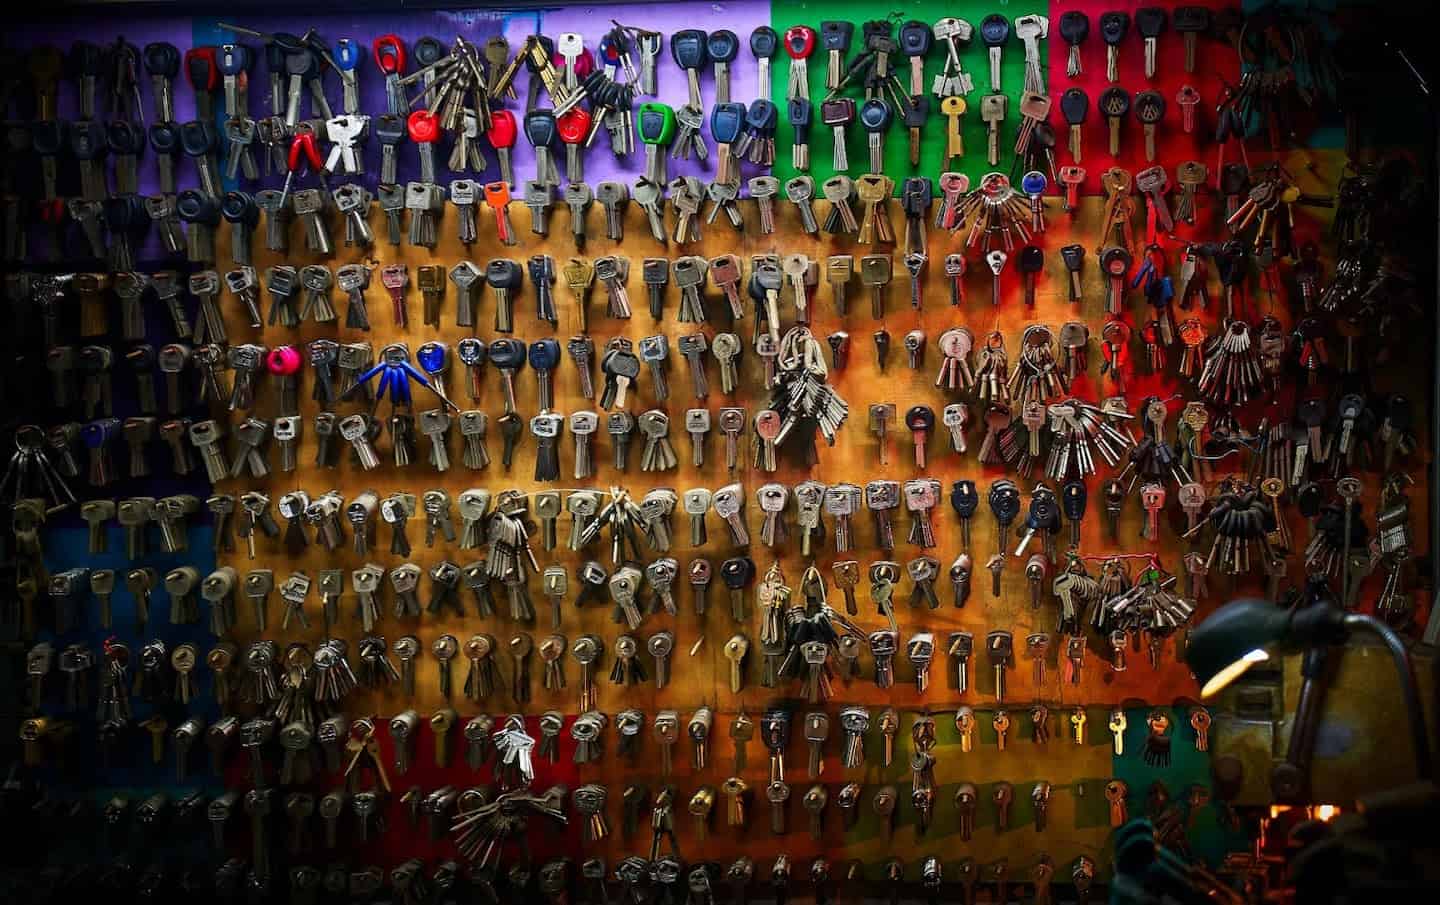 Wall full of keys hanging on hooks.